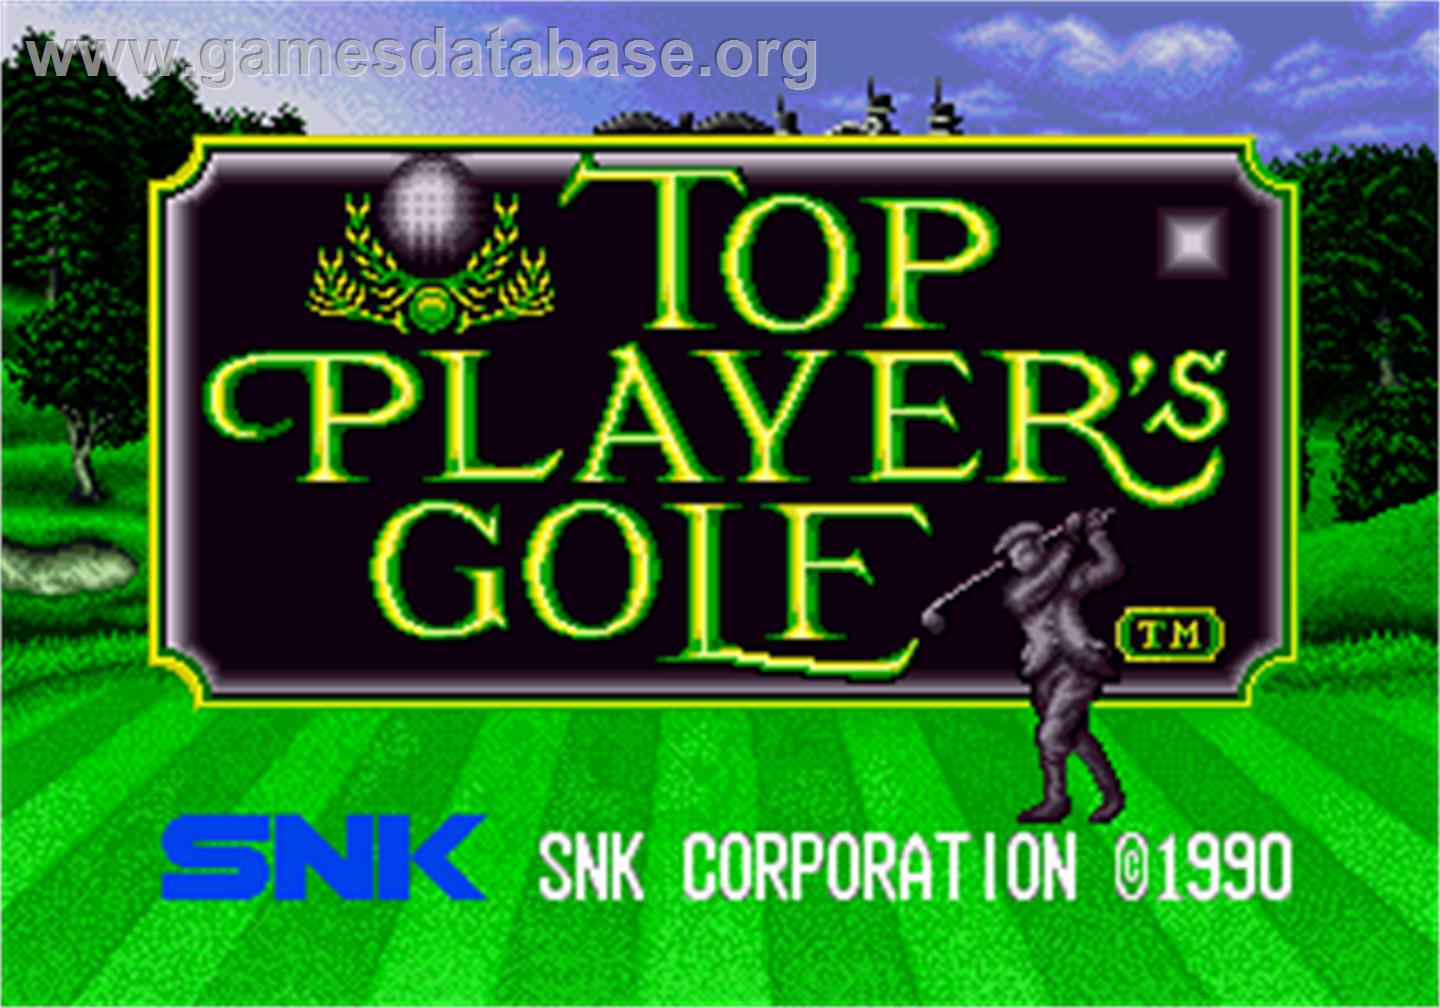 Top Player's Golf - Arcade - Artwork - Title Screen